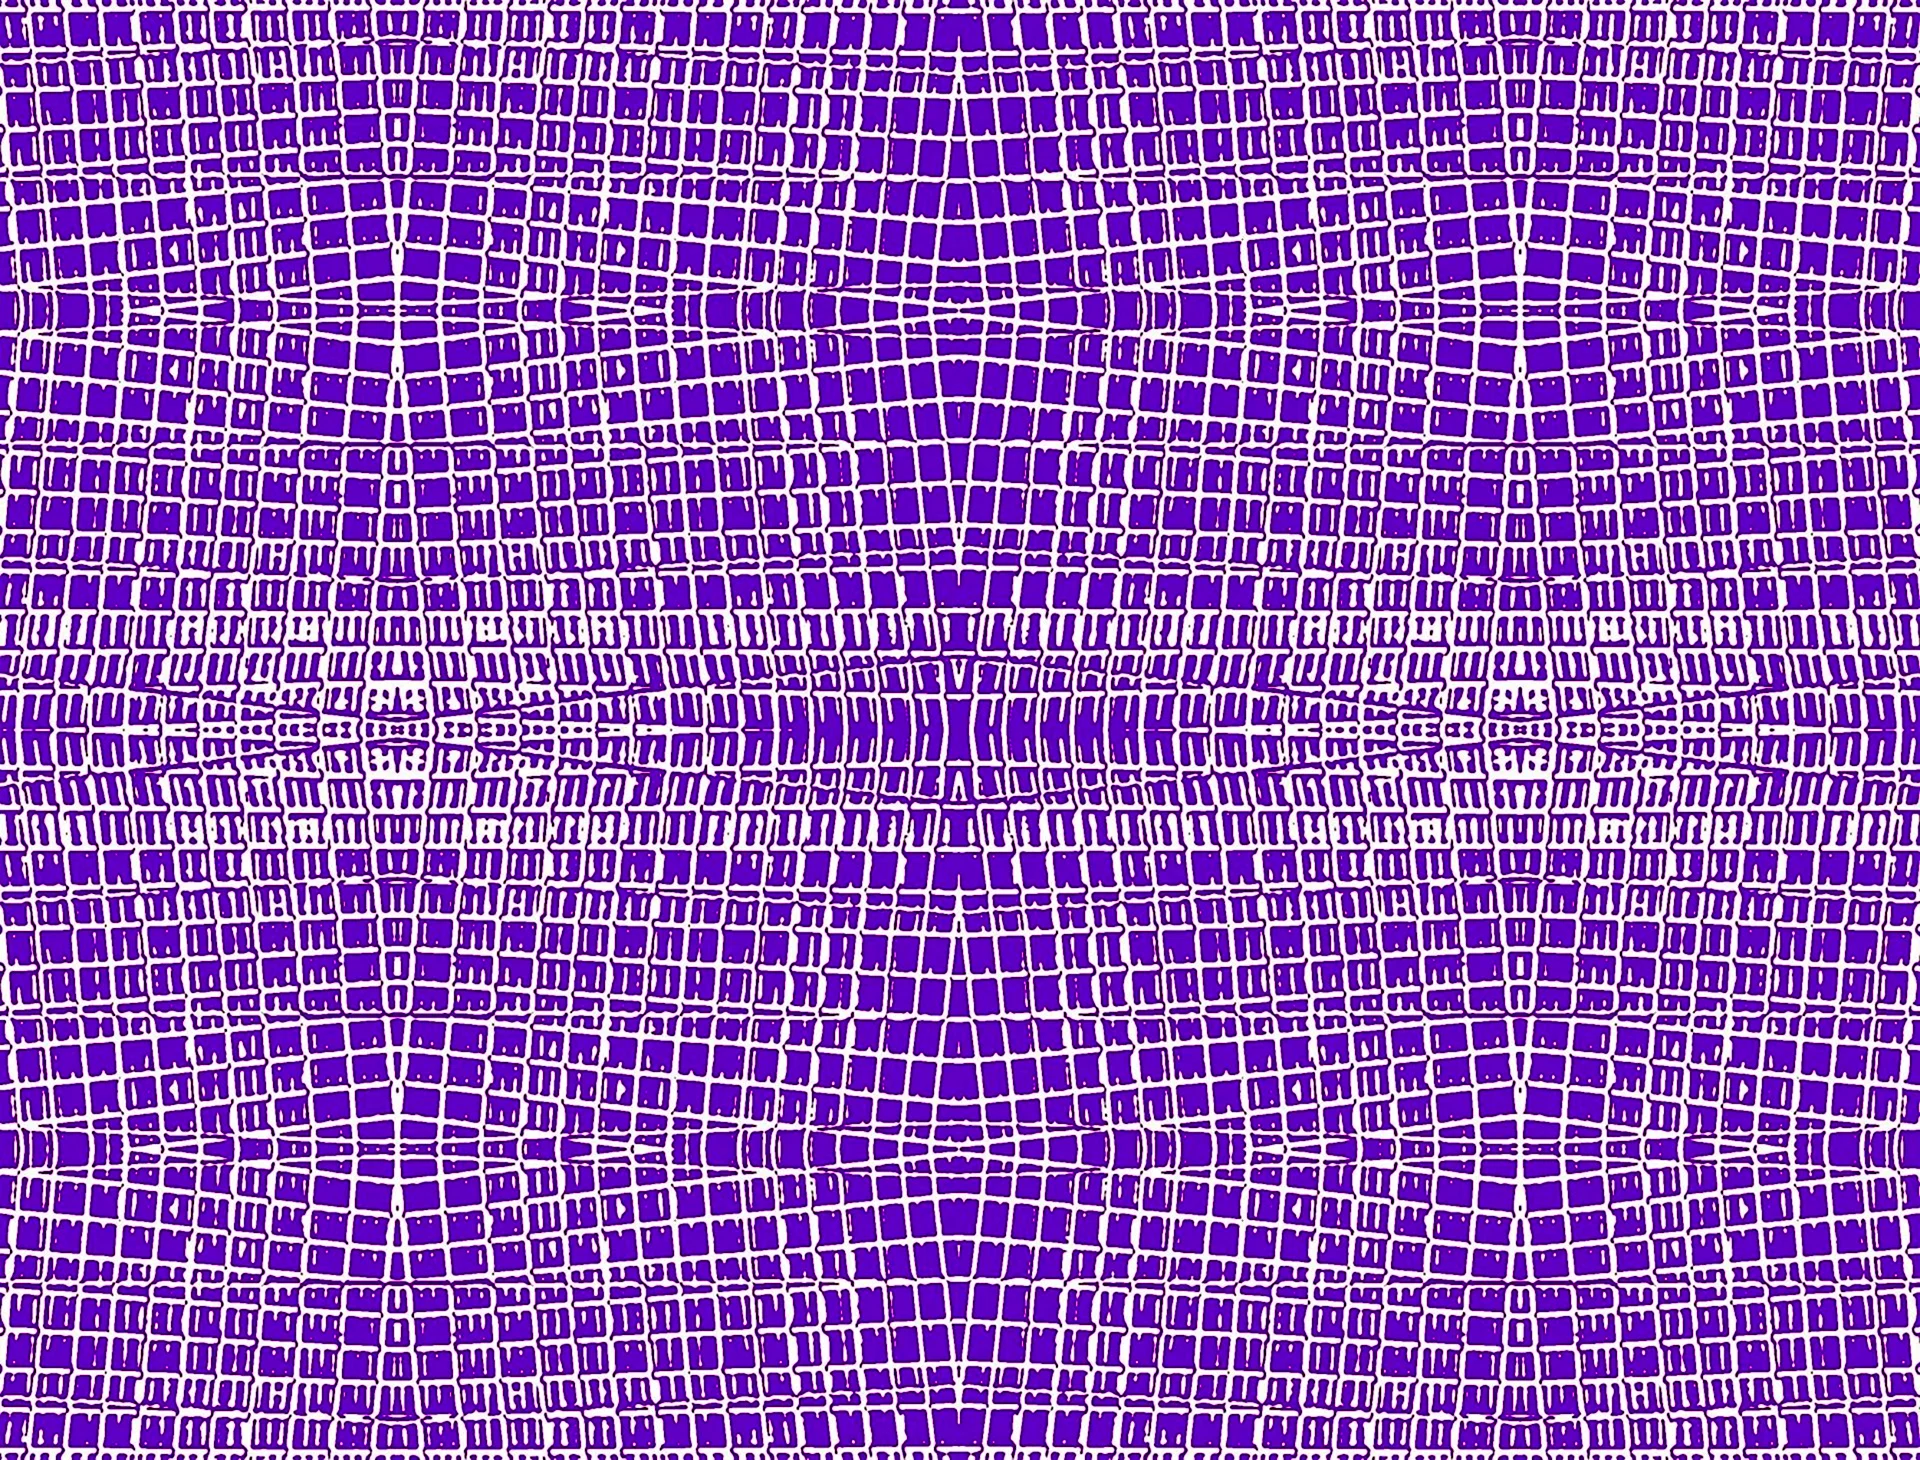 Фиолетовая сетка